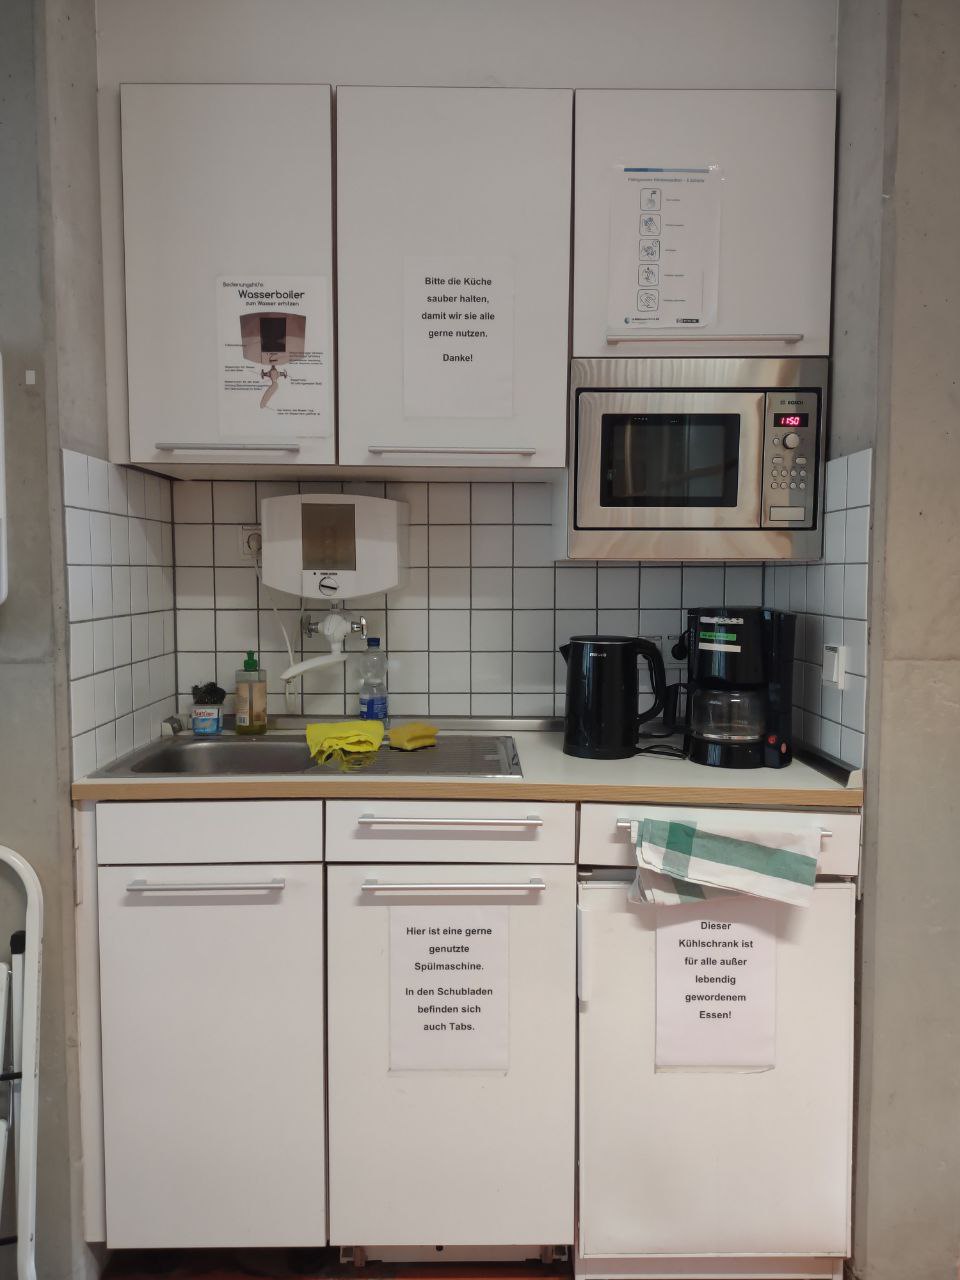 Ein Foto der Küche in aufgeräumten Zustand